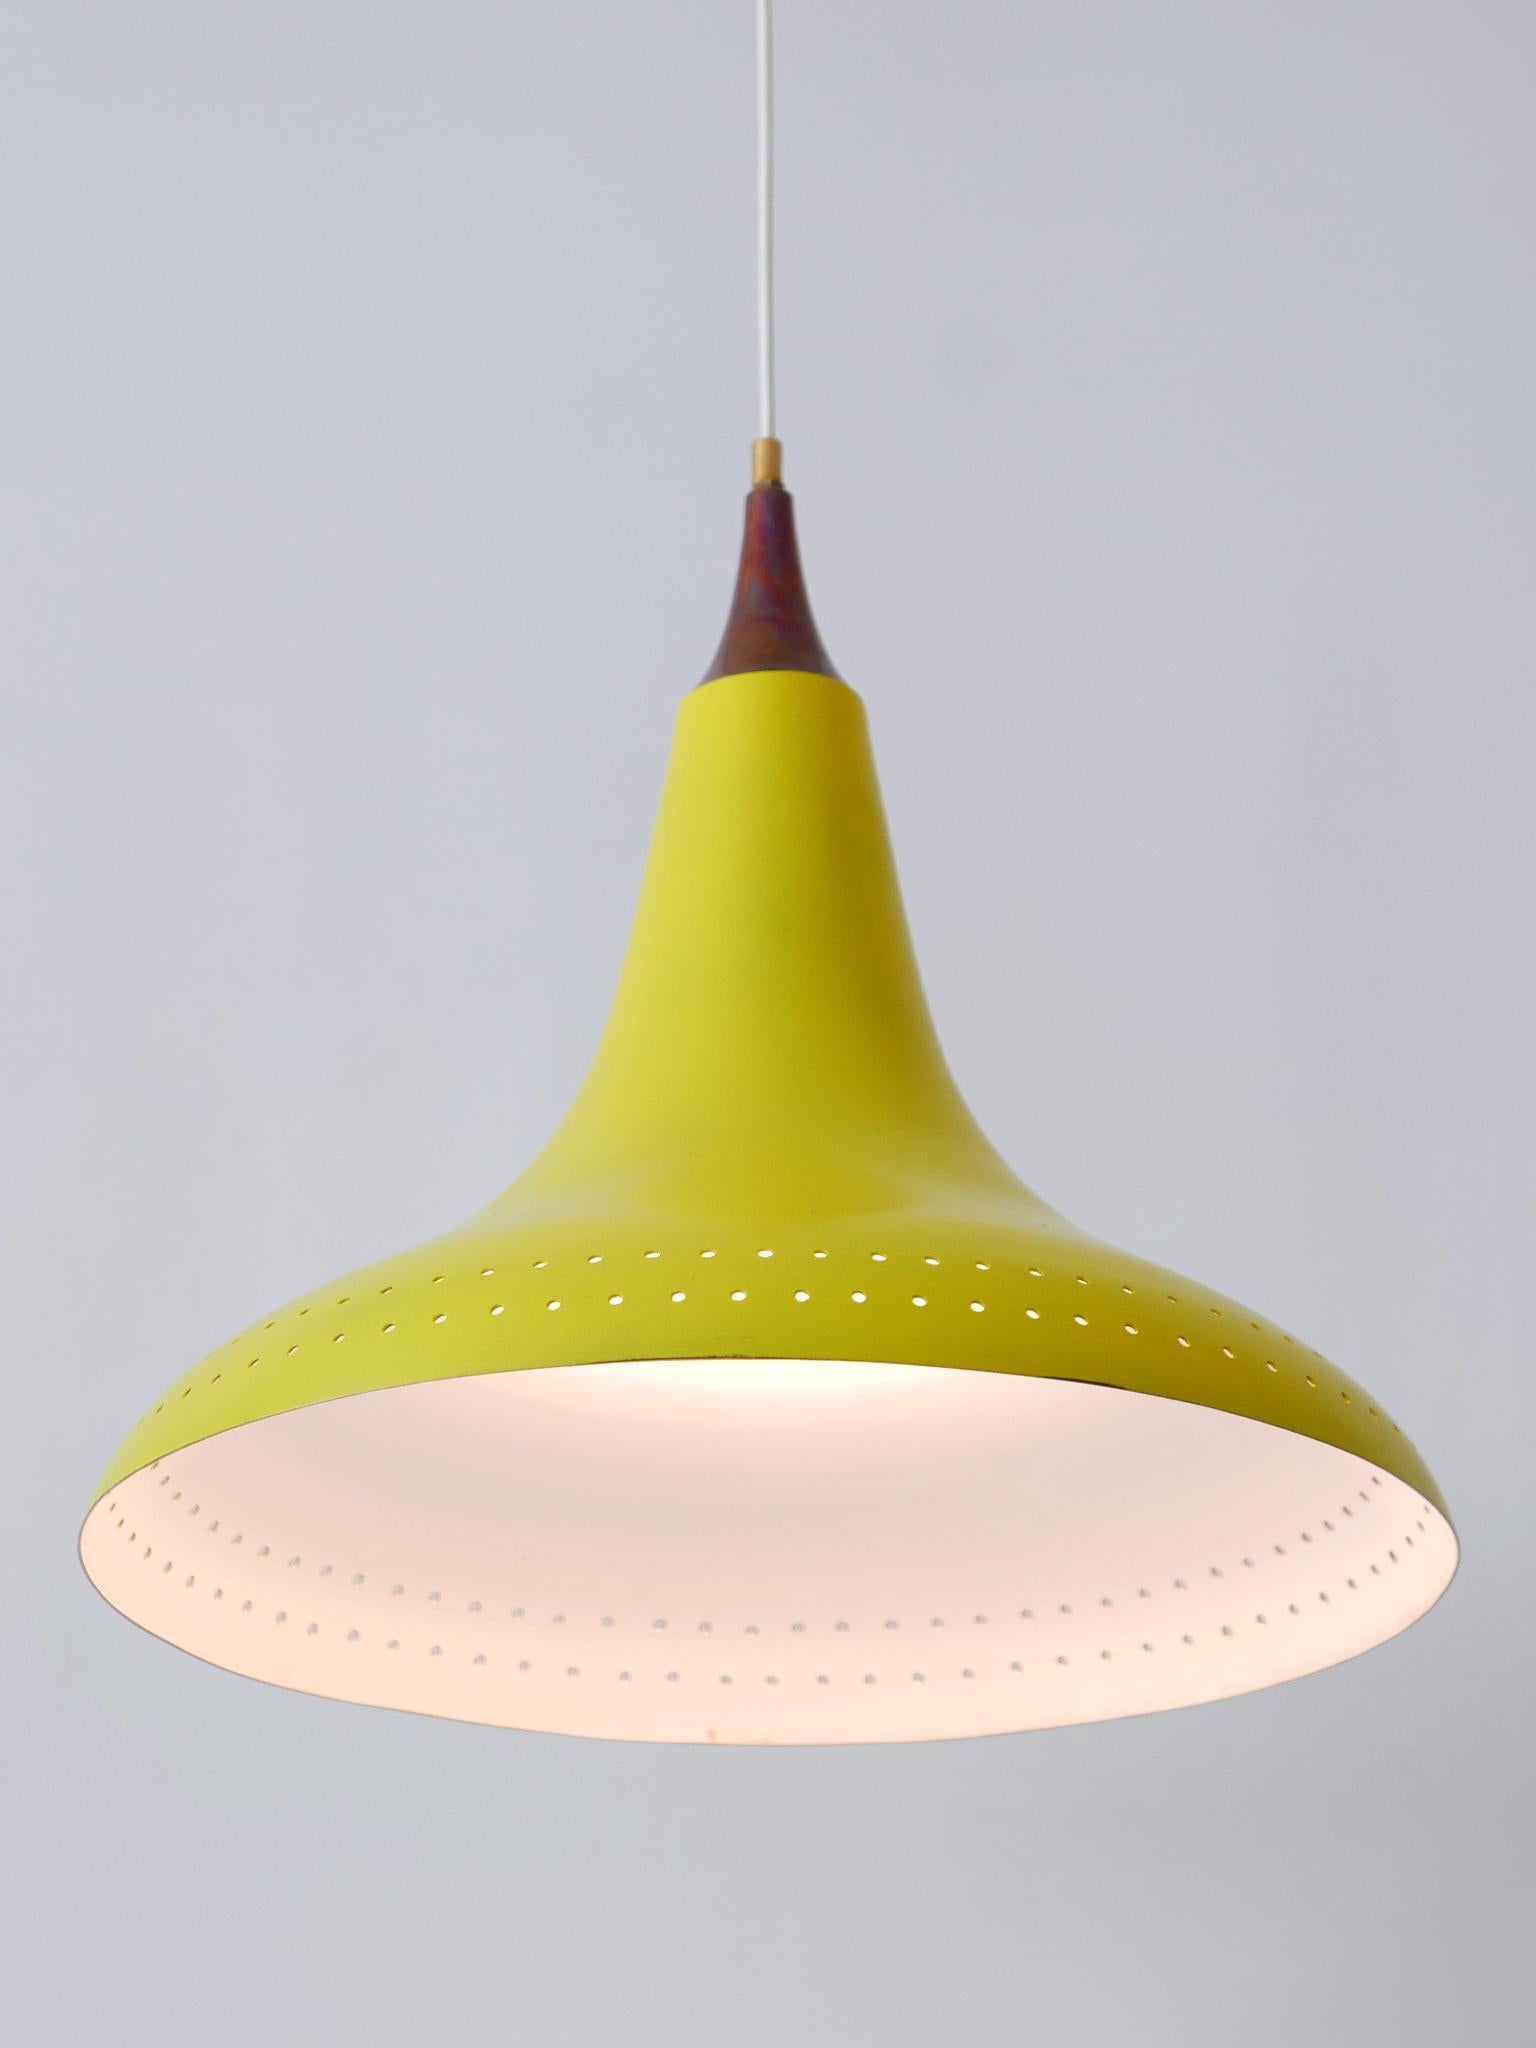 Exceptional Mid-Century Modern Perforated Aluminium Pendant Lamp Austria 1960s For Sale 3